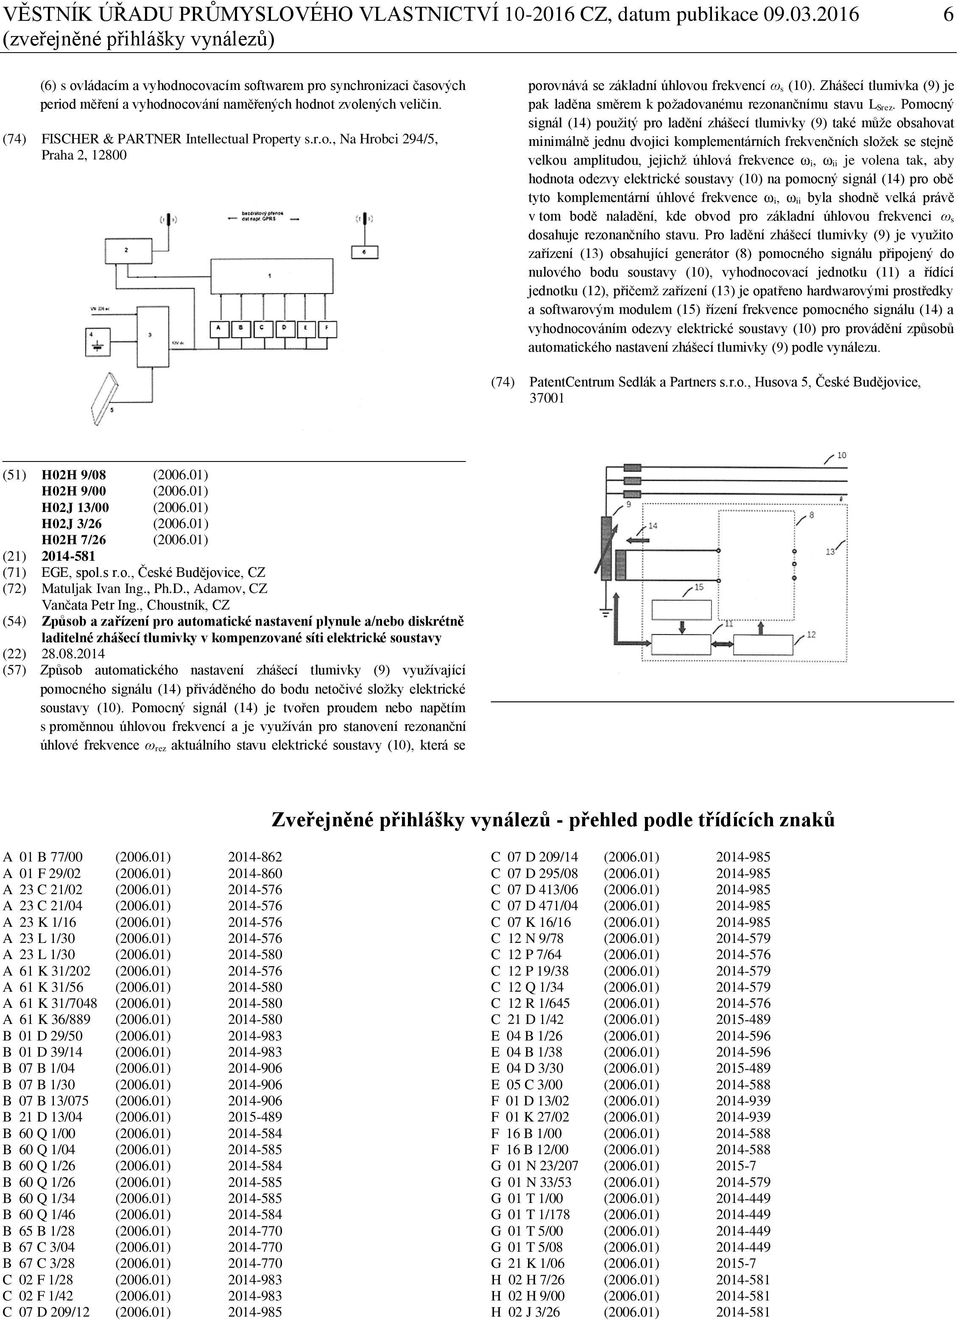 (74) FISCHER & PARTNER Intellectual Property s.r.o., Na Hrobci 294/5, Praha 2, 12800 porovnává se základní úhlovou frekvencí ω s (10).